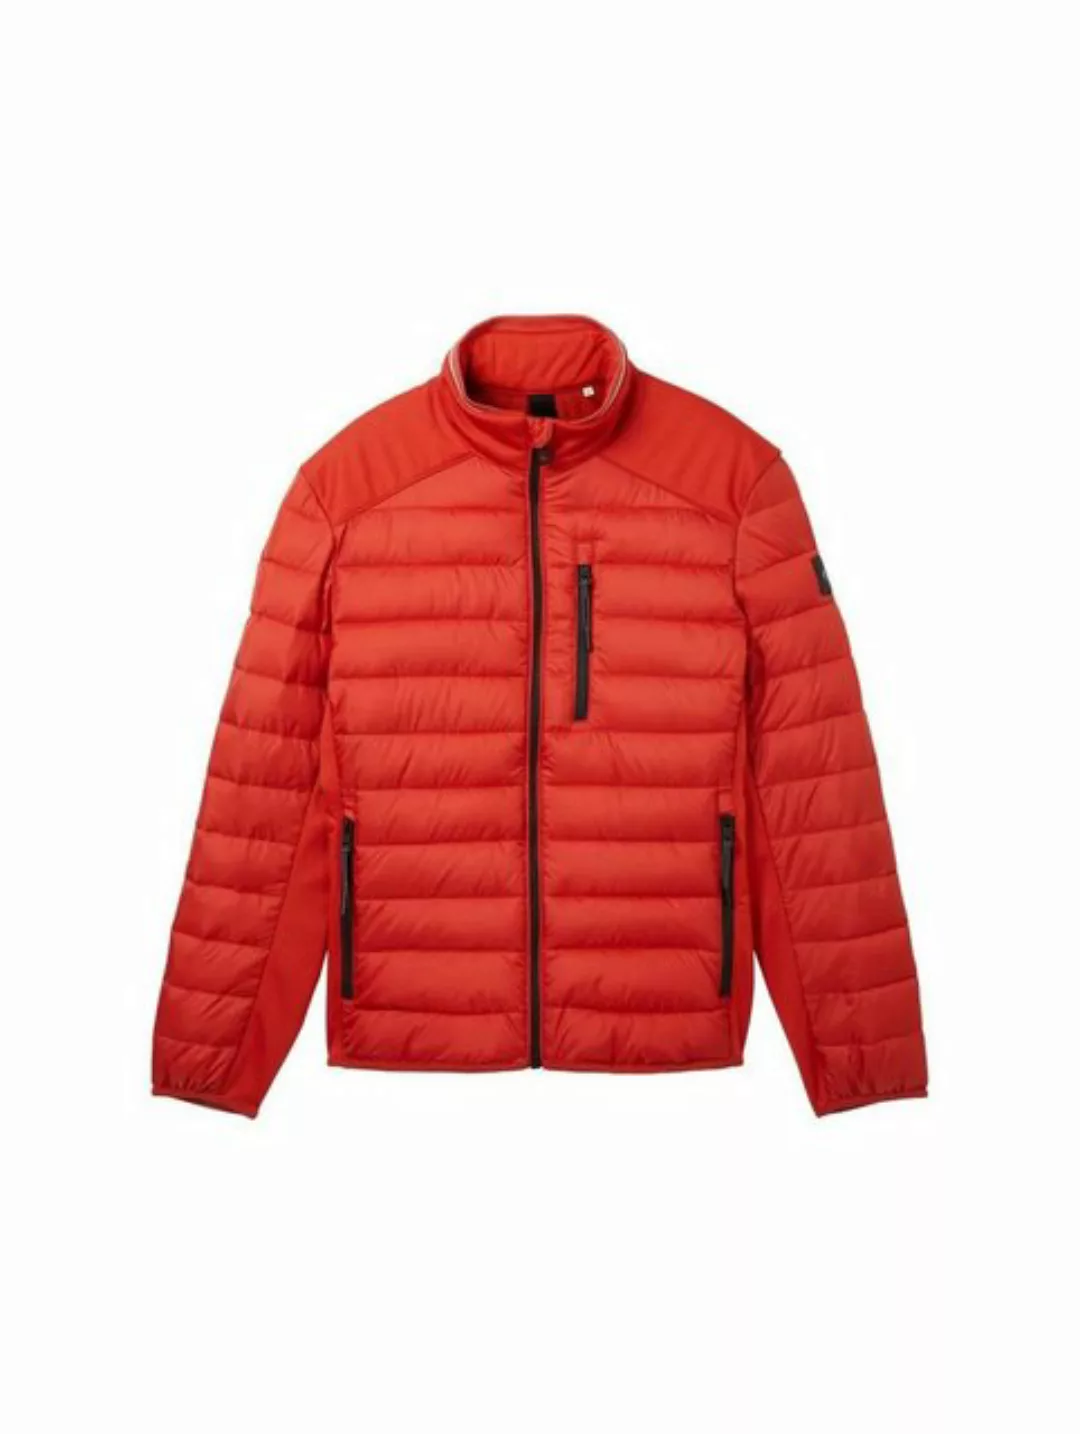 TOM TAILOR Outdoorjacke hybrid jacket, fire red günstig online kaufen